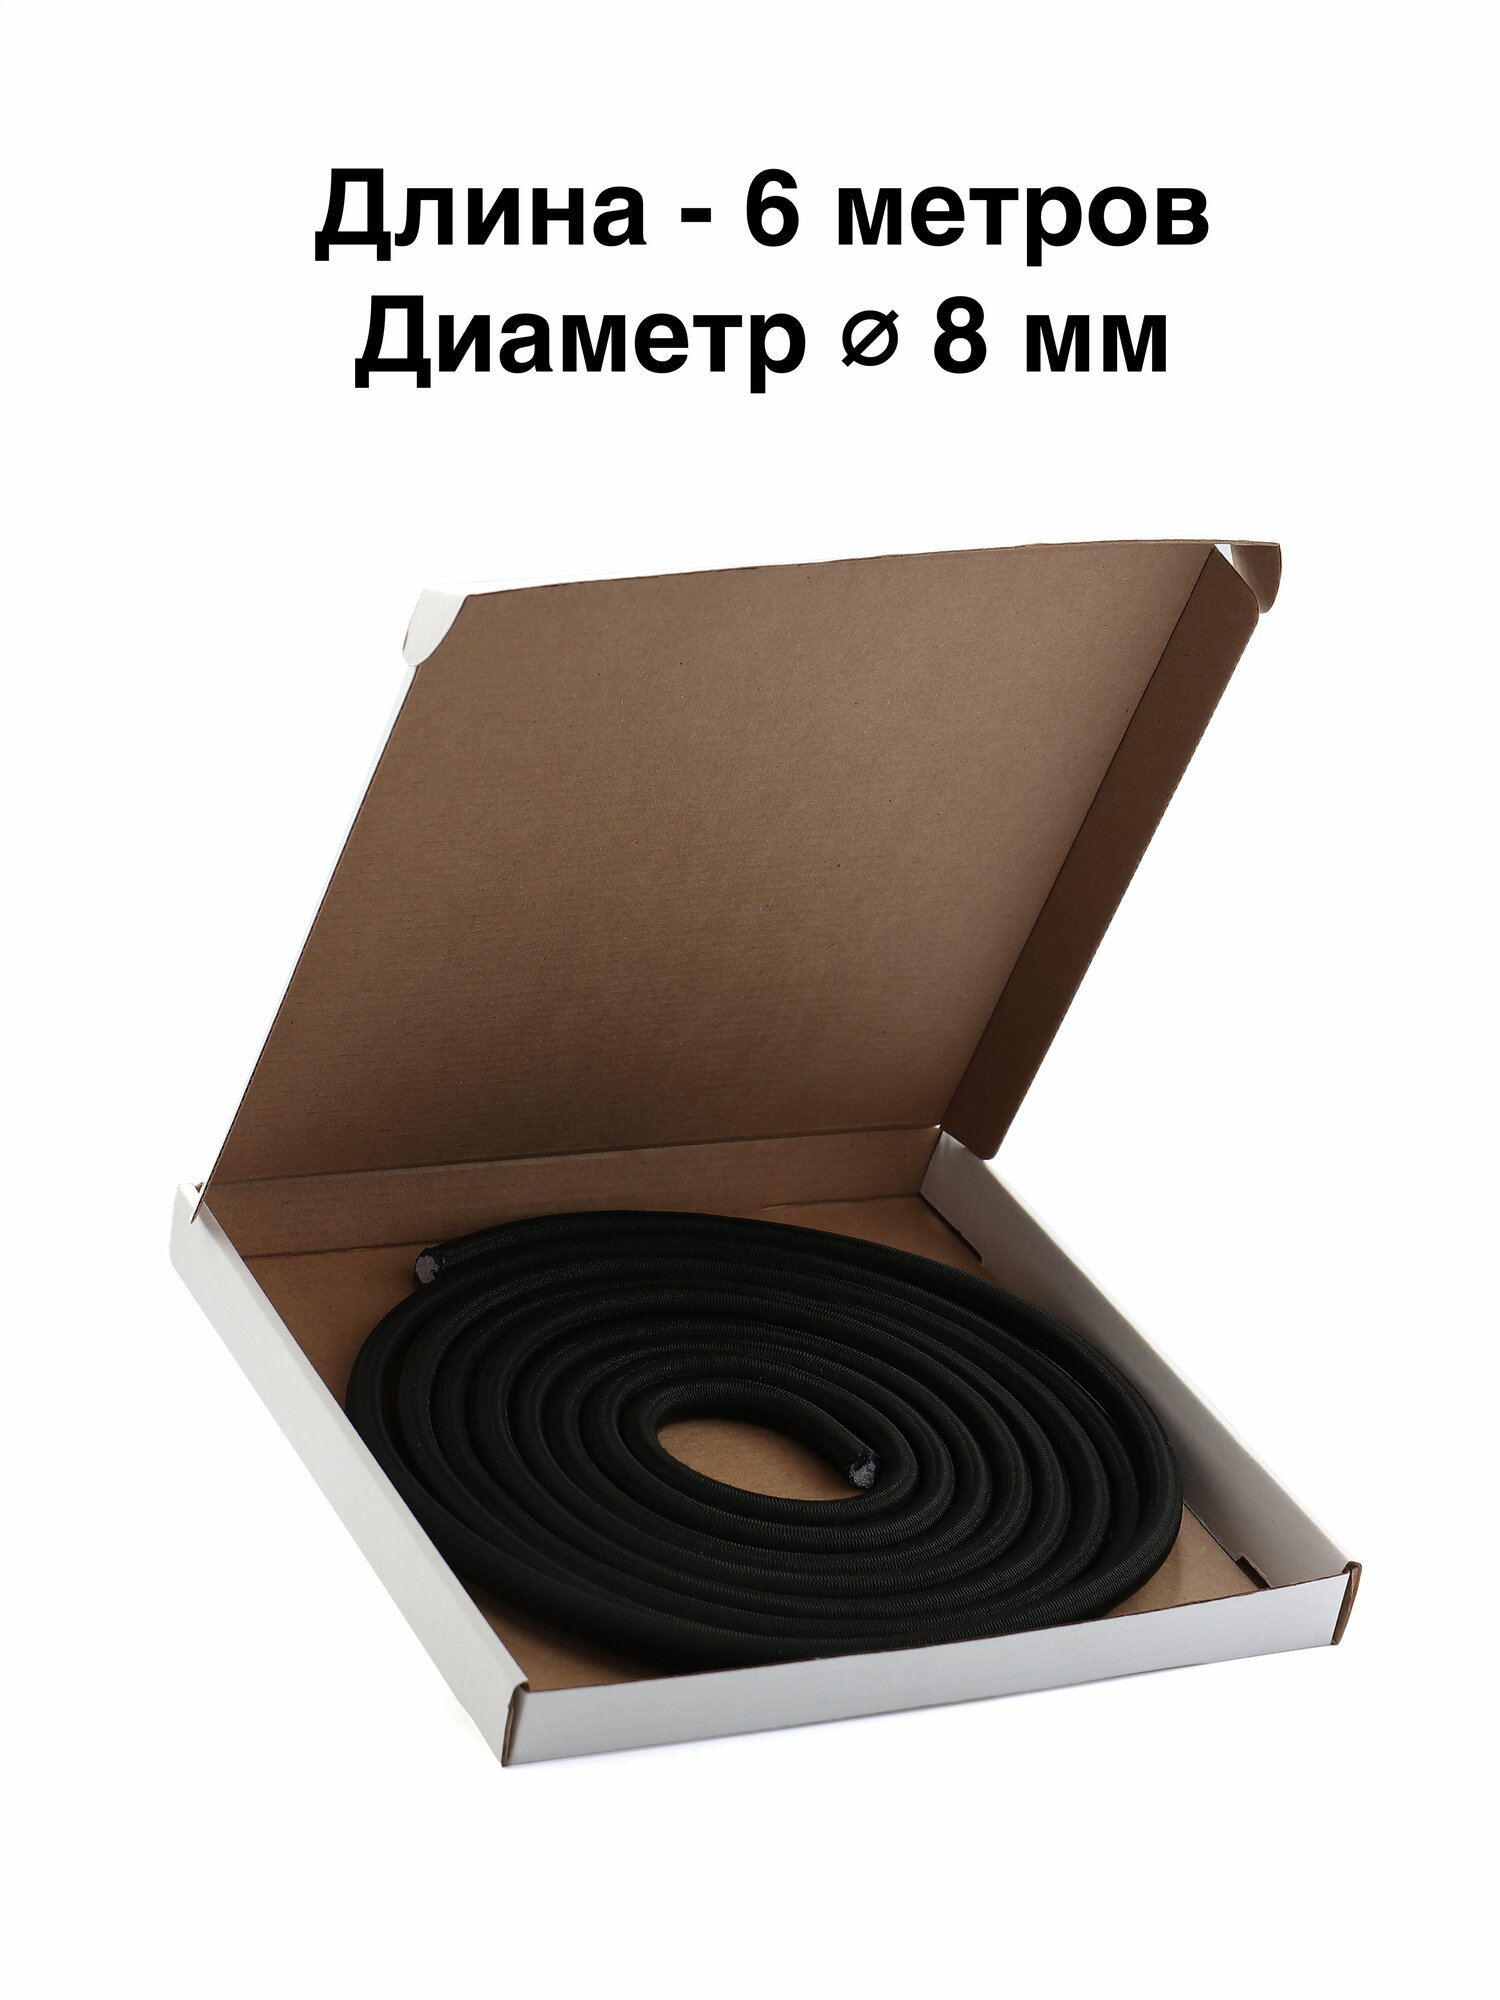 Шнур эспандерный борцовская резина, черный 6 метров, диаметр 8 мм